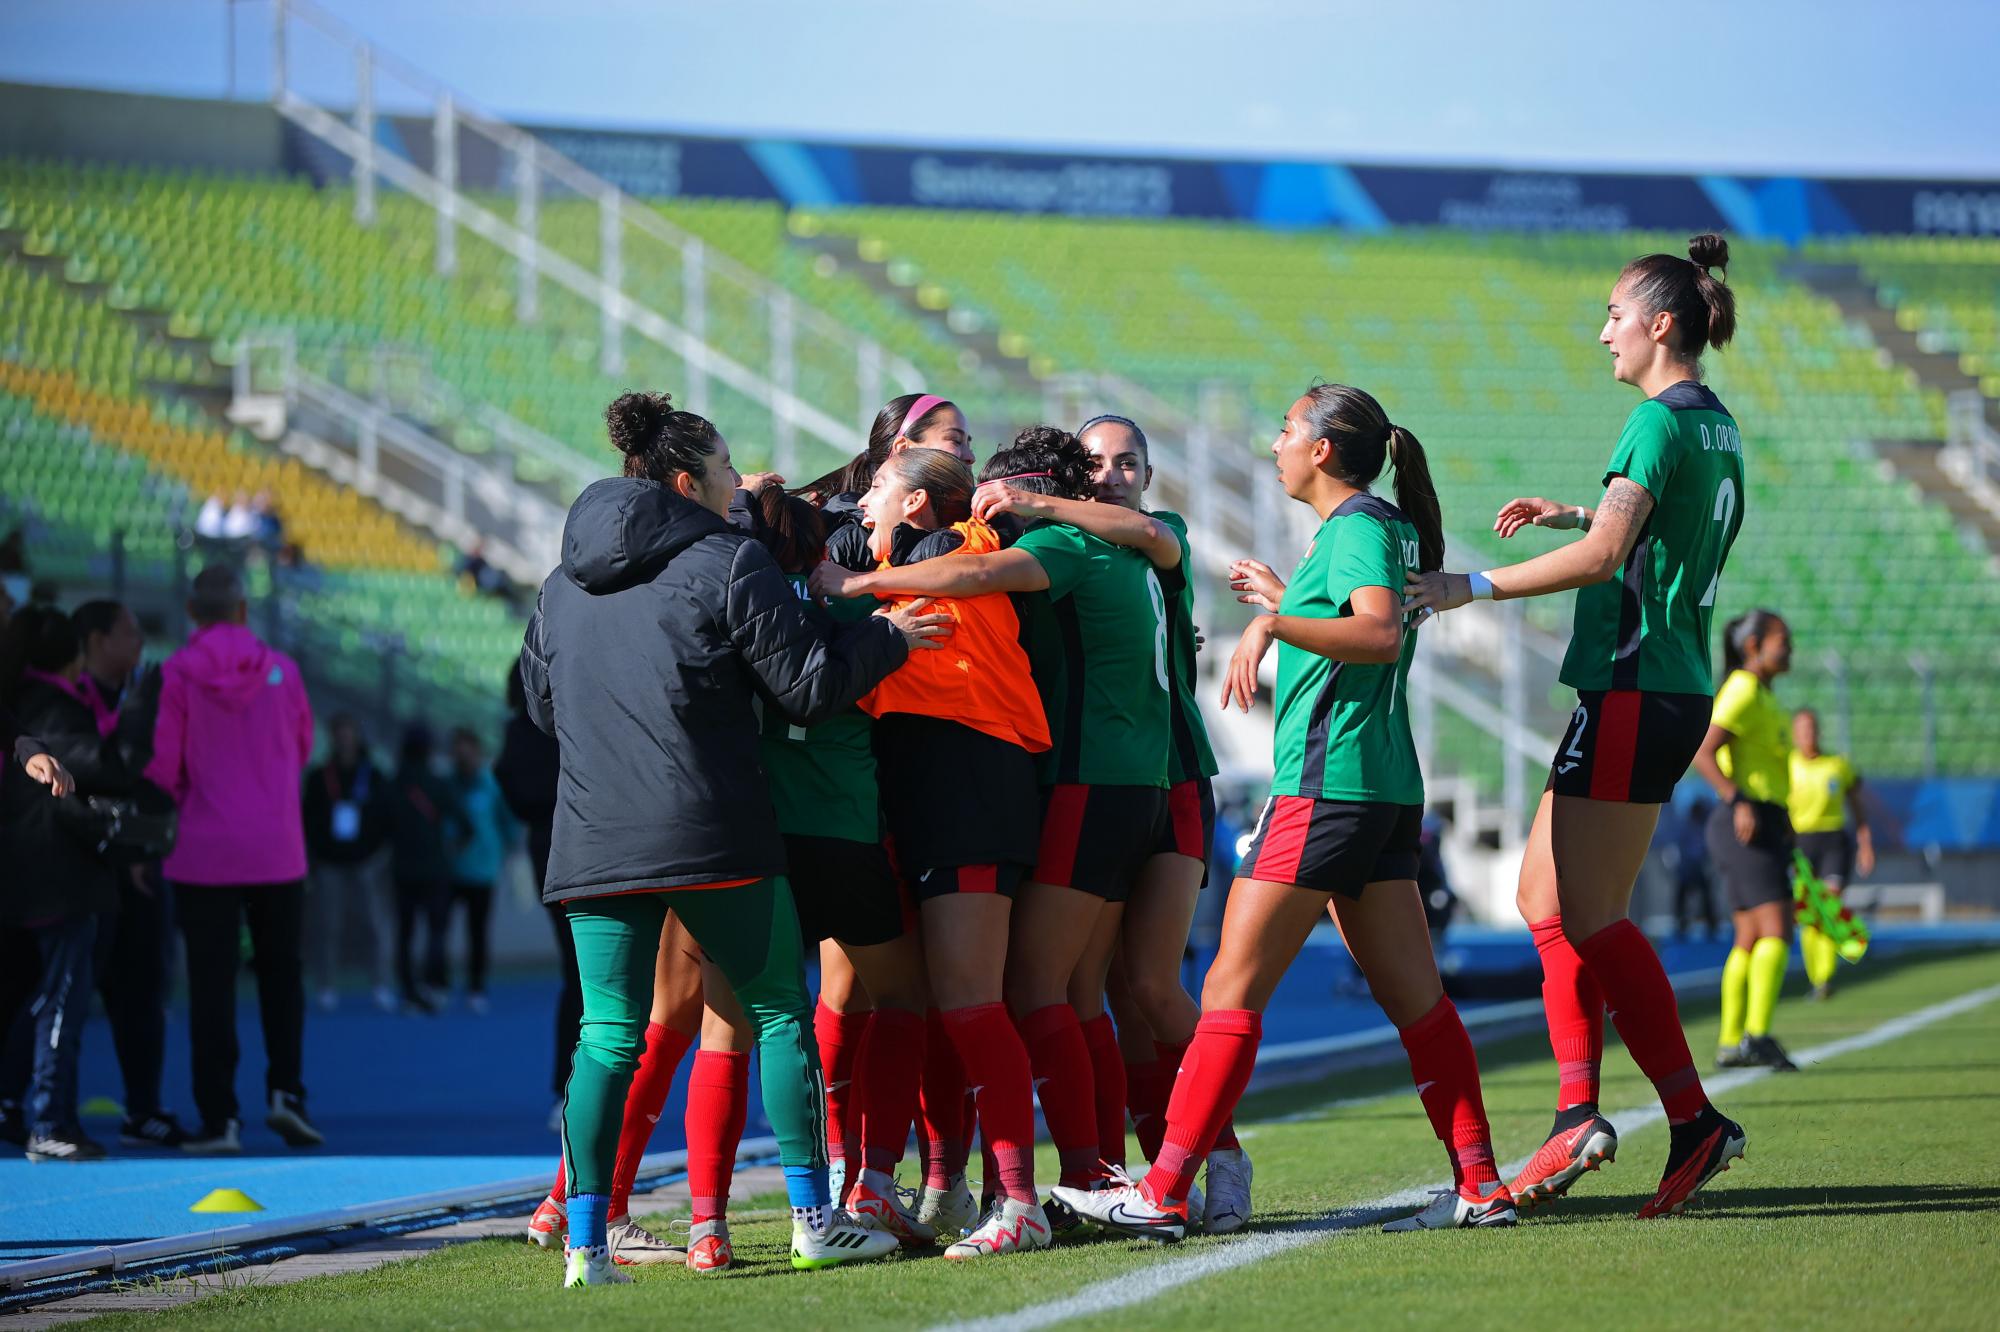 $!Tras 24 años, México jugará una Final femenil en futbol en unos Panamericanos